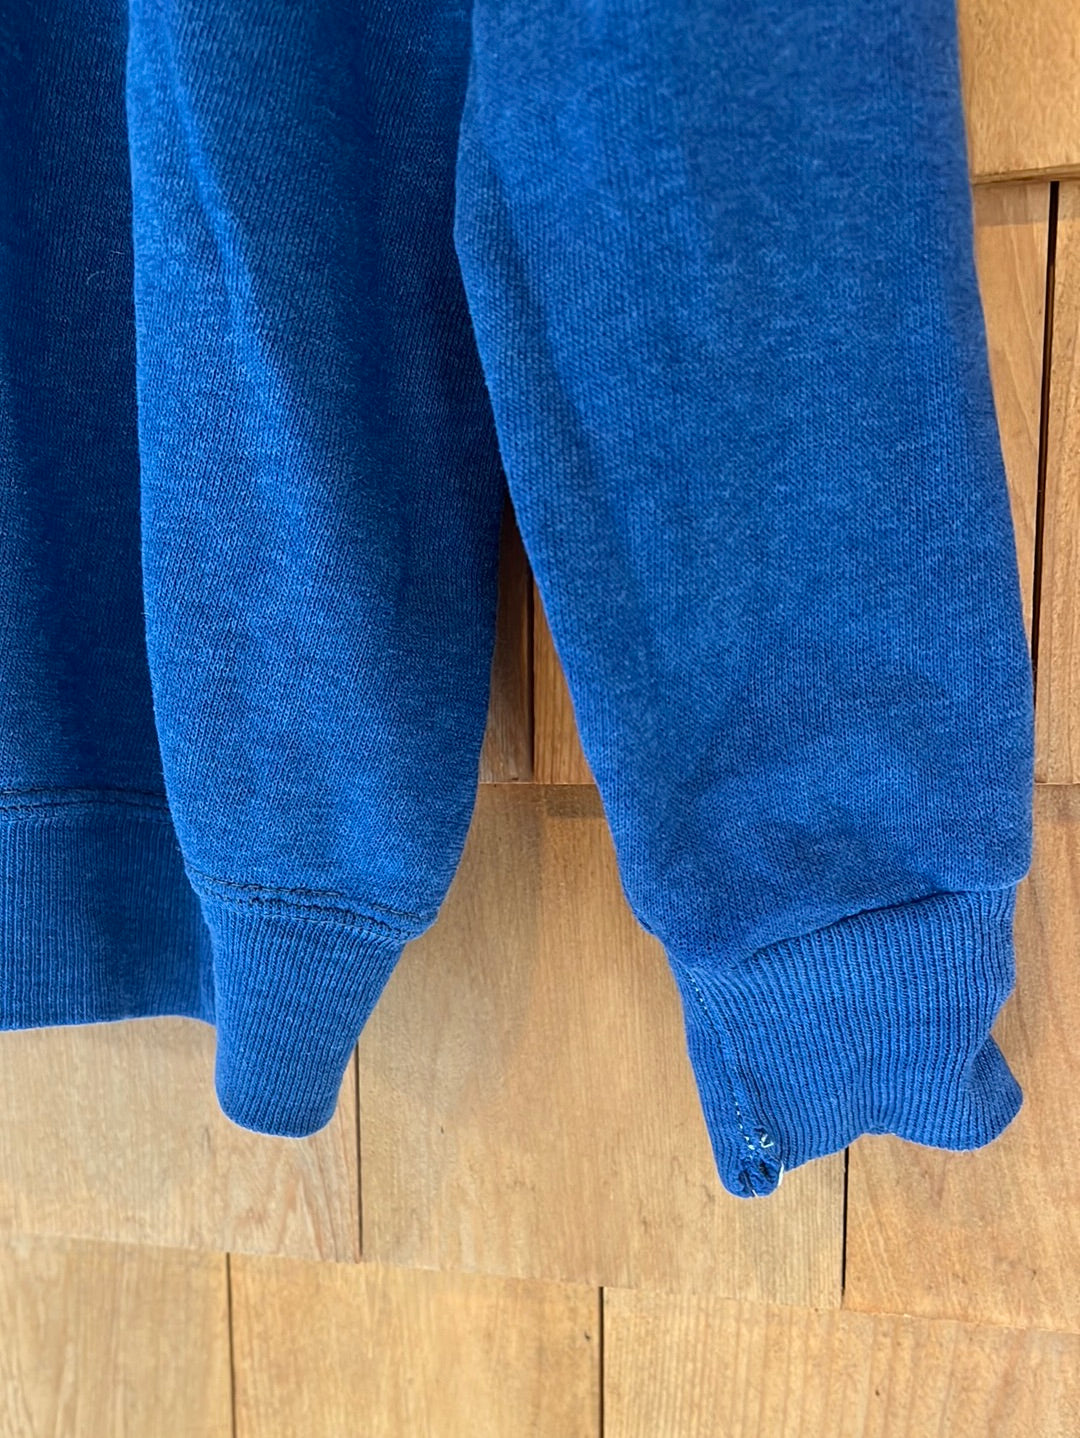 Vintage Super Soft Sweatshirt - Navy Blue